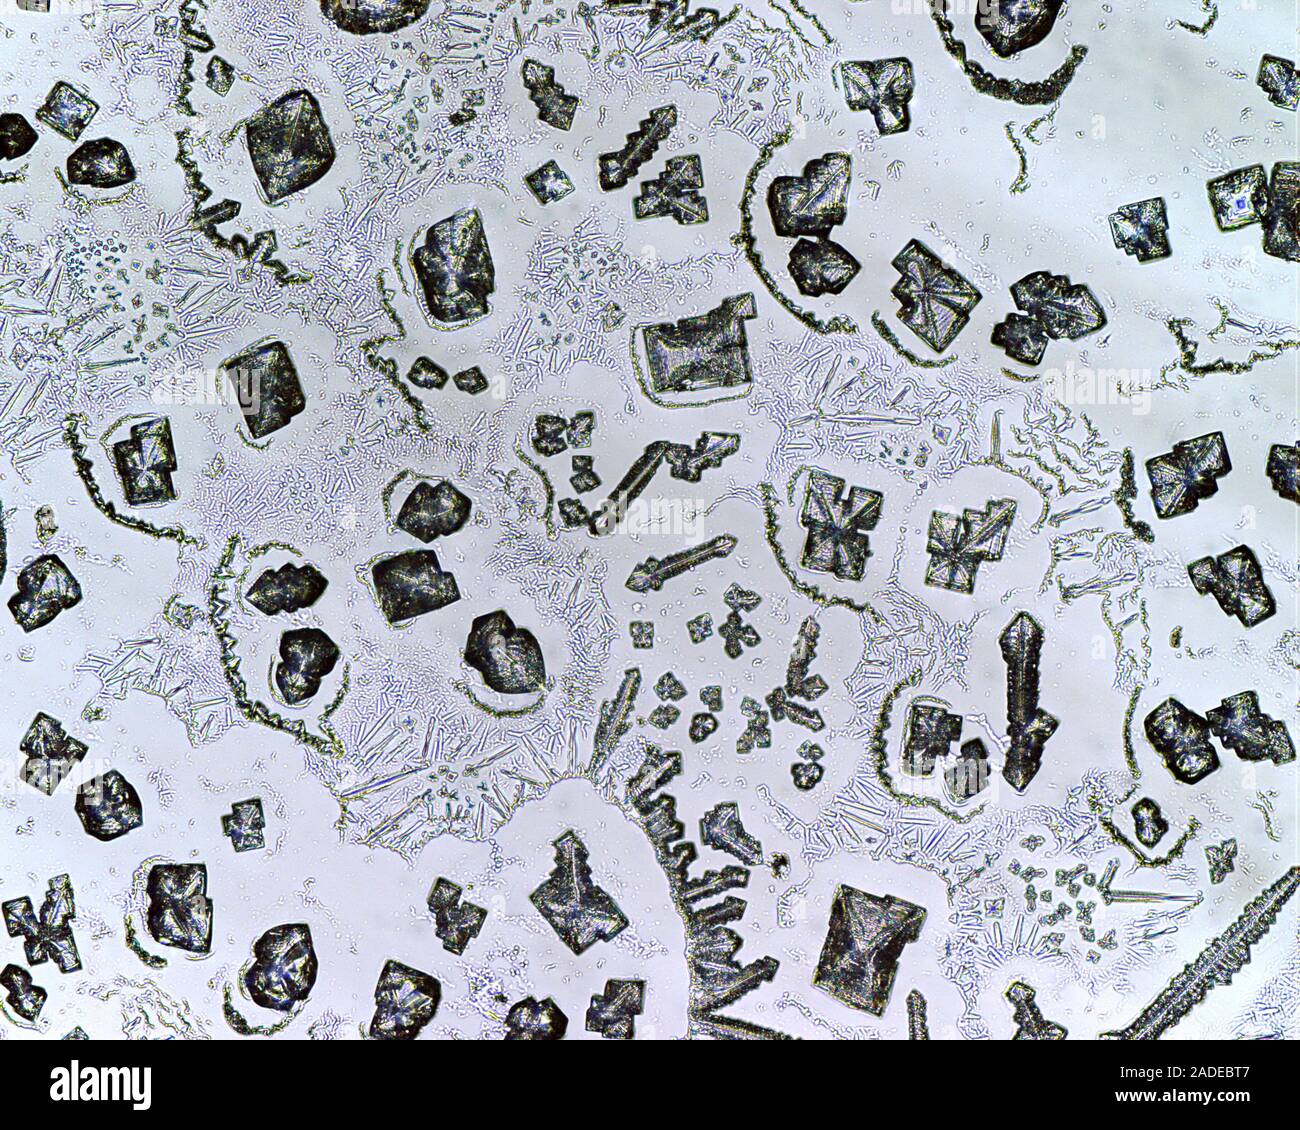 Il cloruro di sodio cristalli, micrografia di luce. Il minerale di cloruro  di sodio (NaCl) è meglio conosciuto come sale da tavola. Il sale viene  ottenuto dalle miniere di sale o da